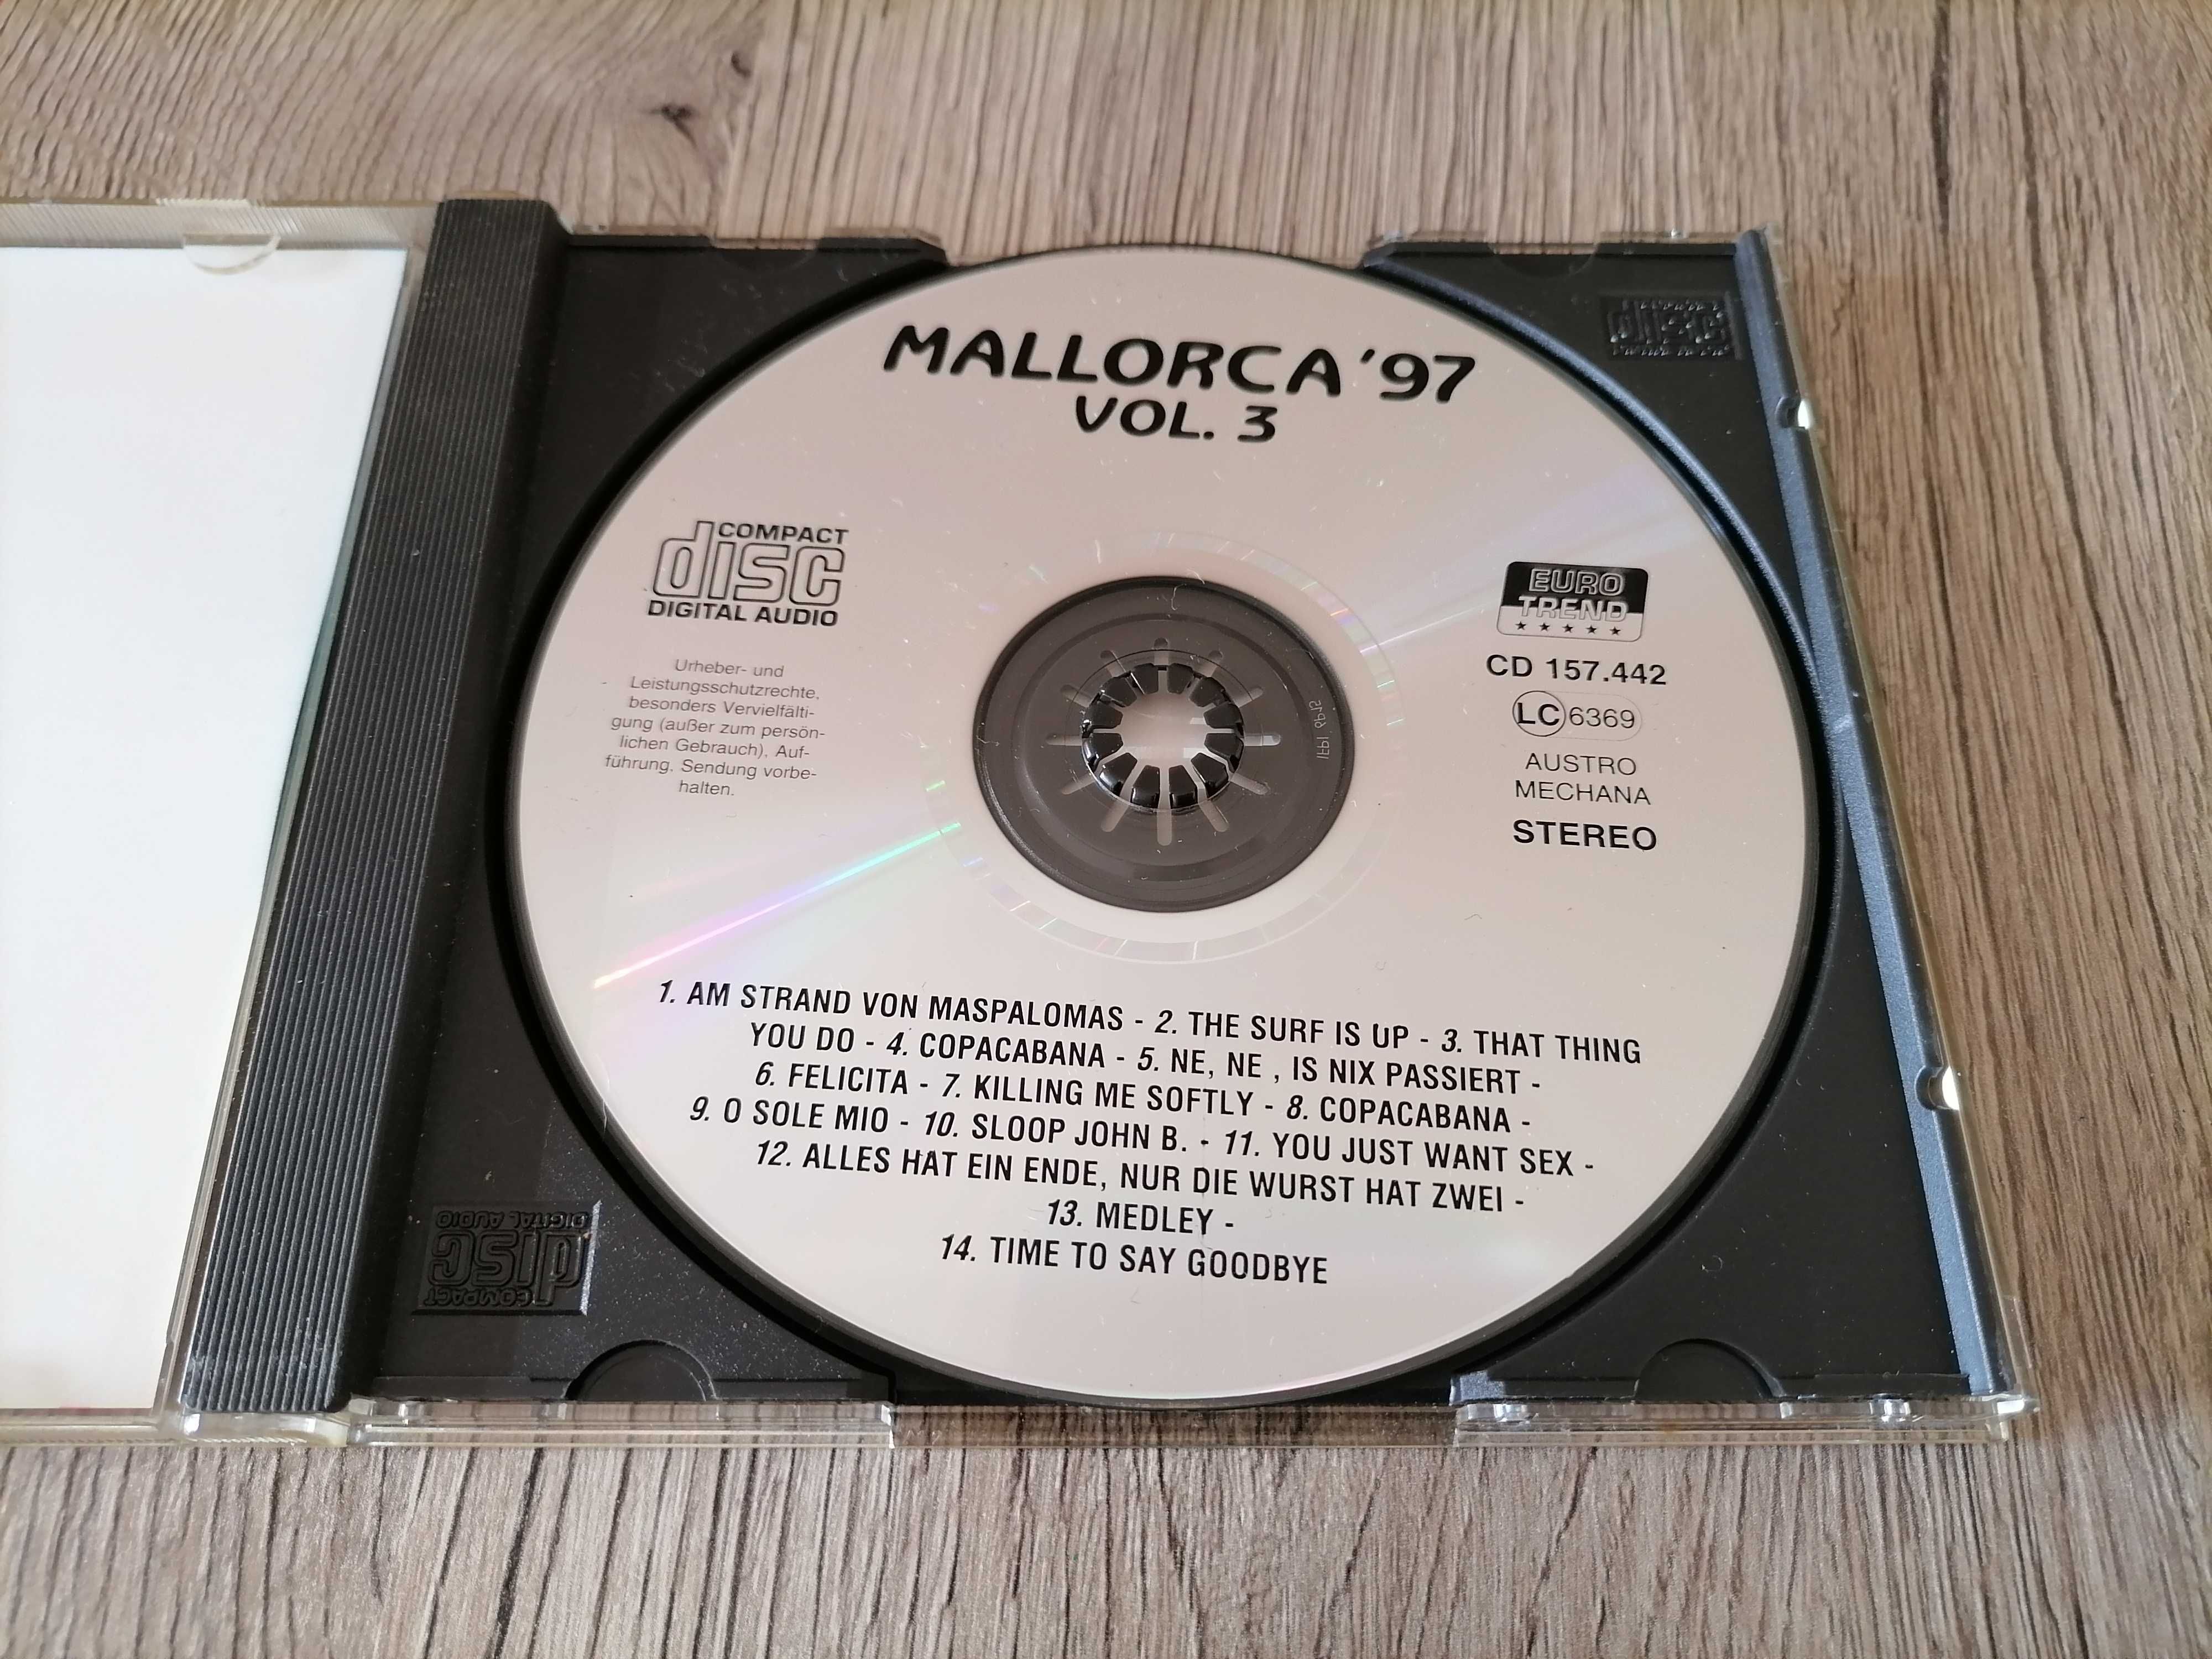 Mallorca '97 Vol. 3 CD